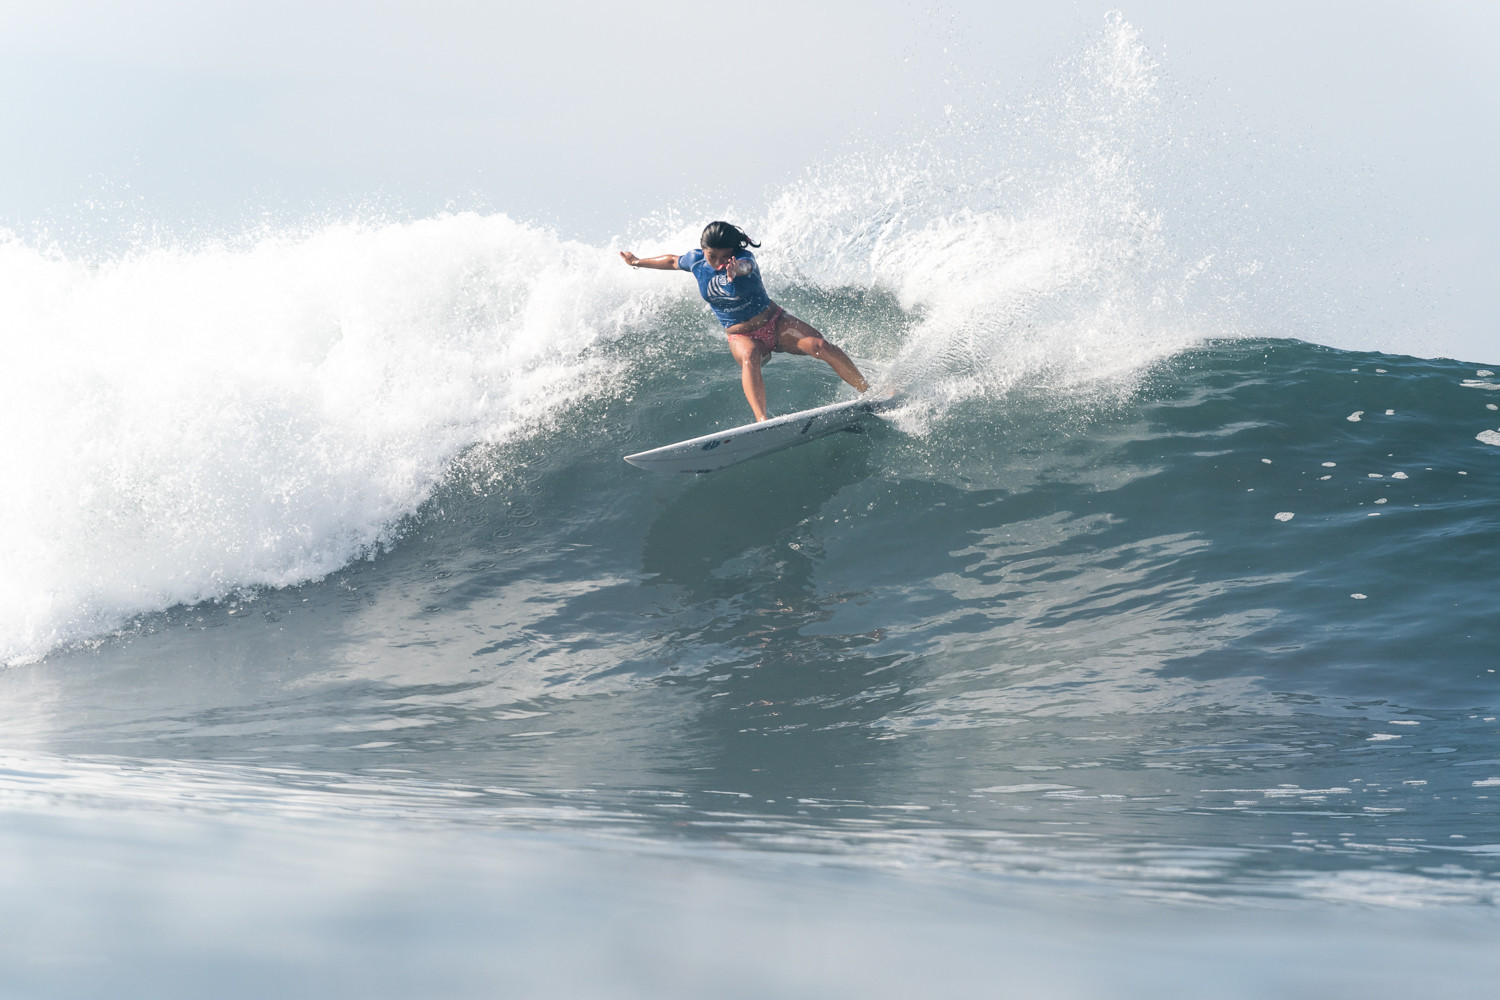 Japan's Mahina Maeda in action on the water at Surf City ©ISA/Sean Evans